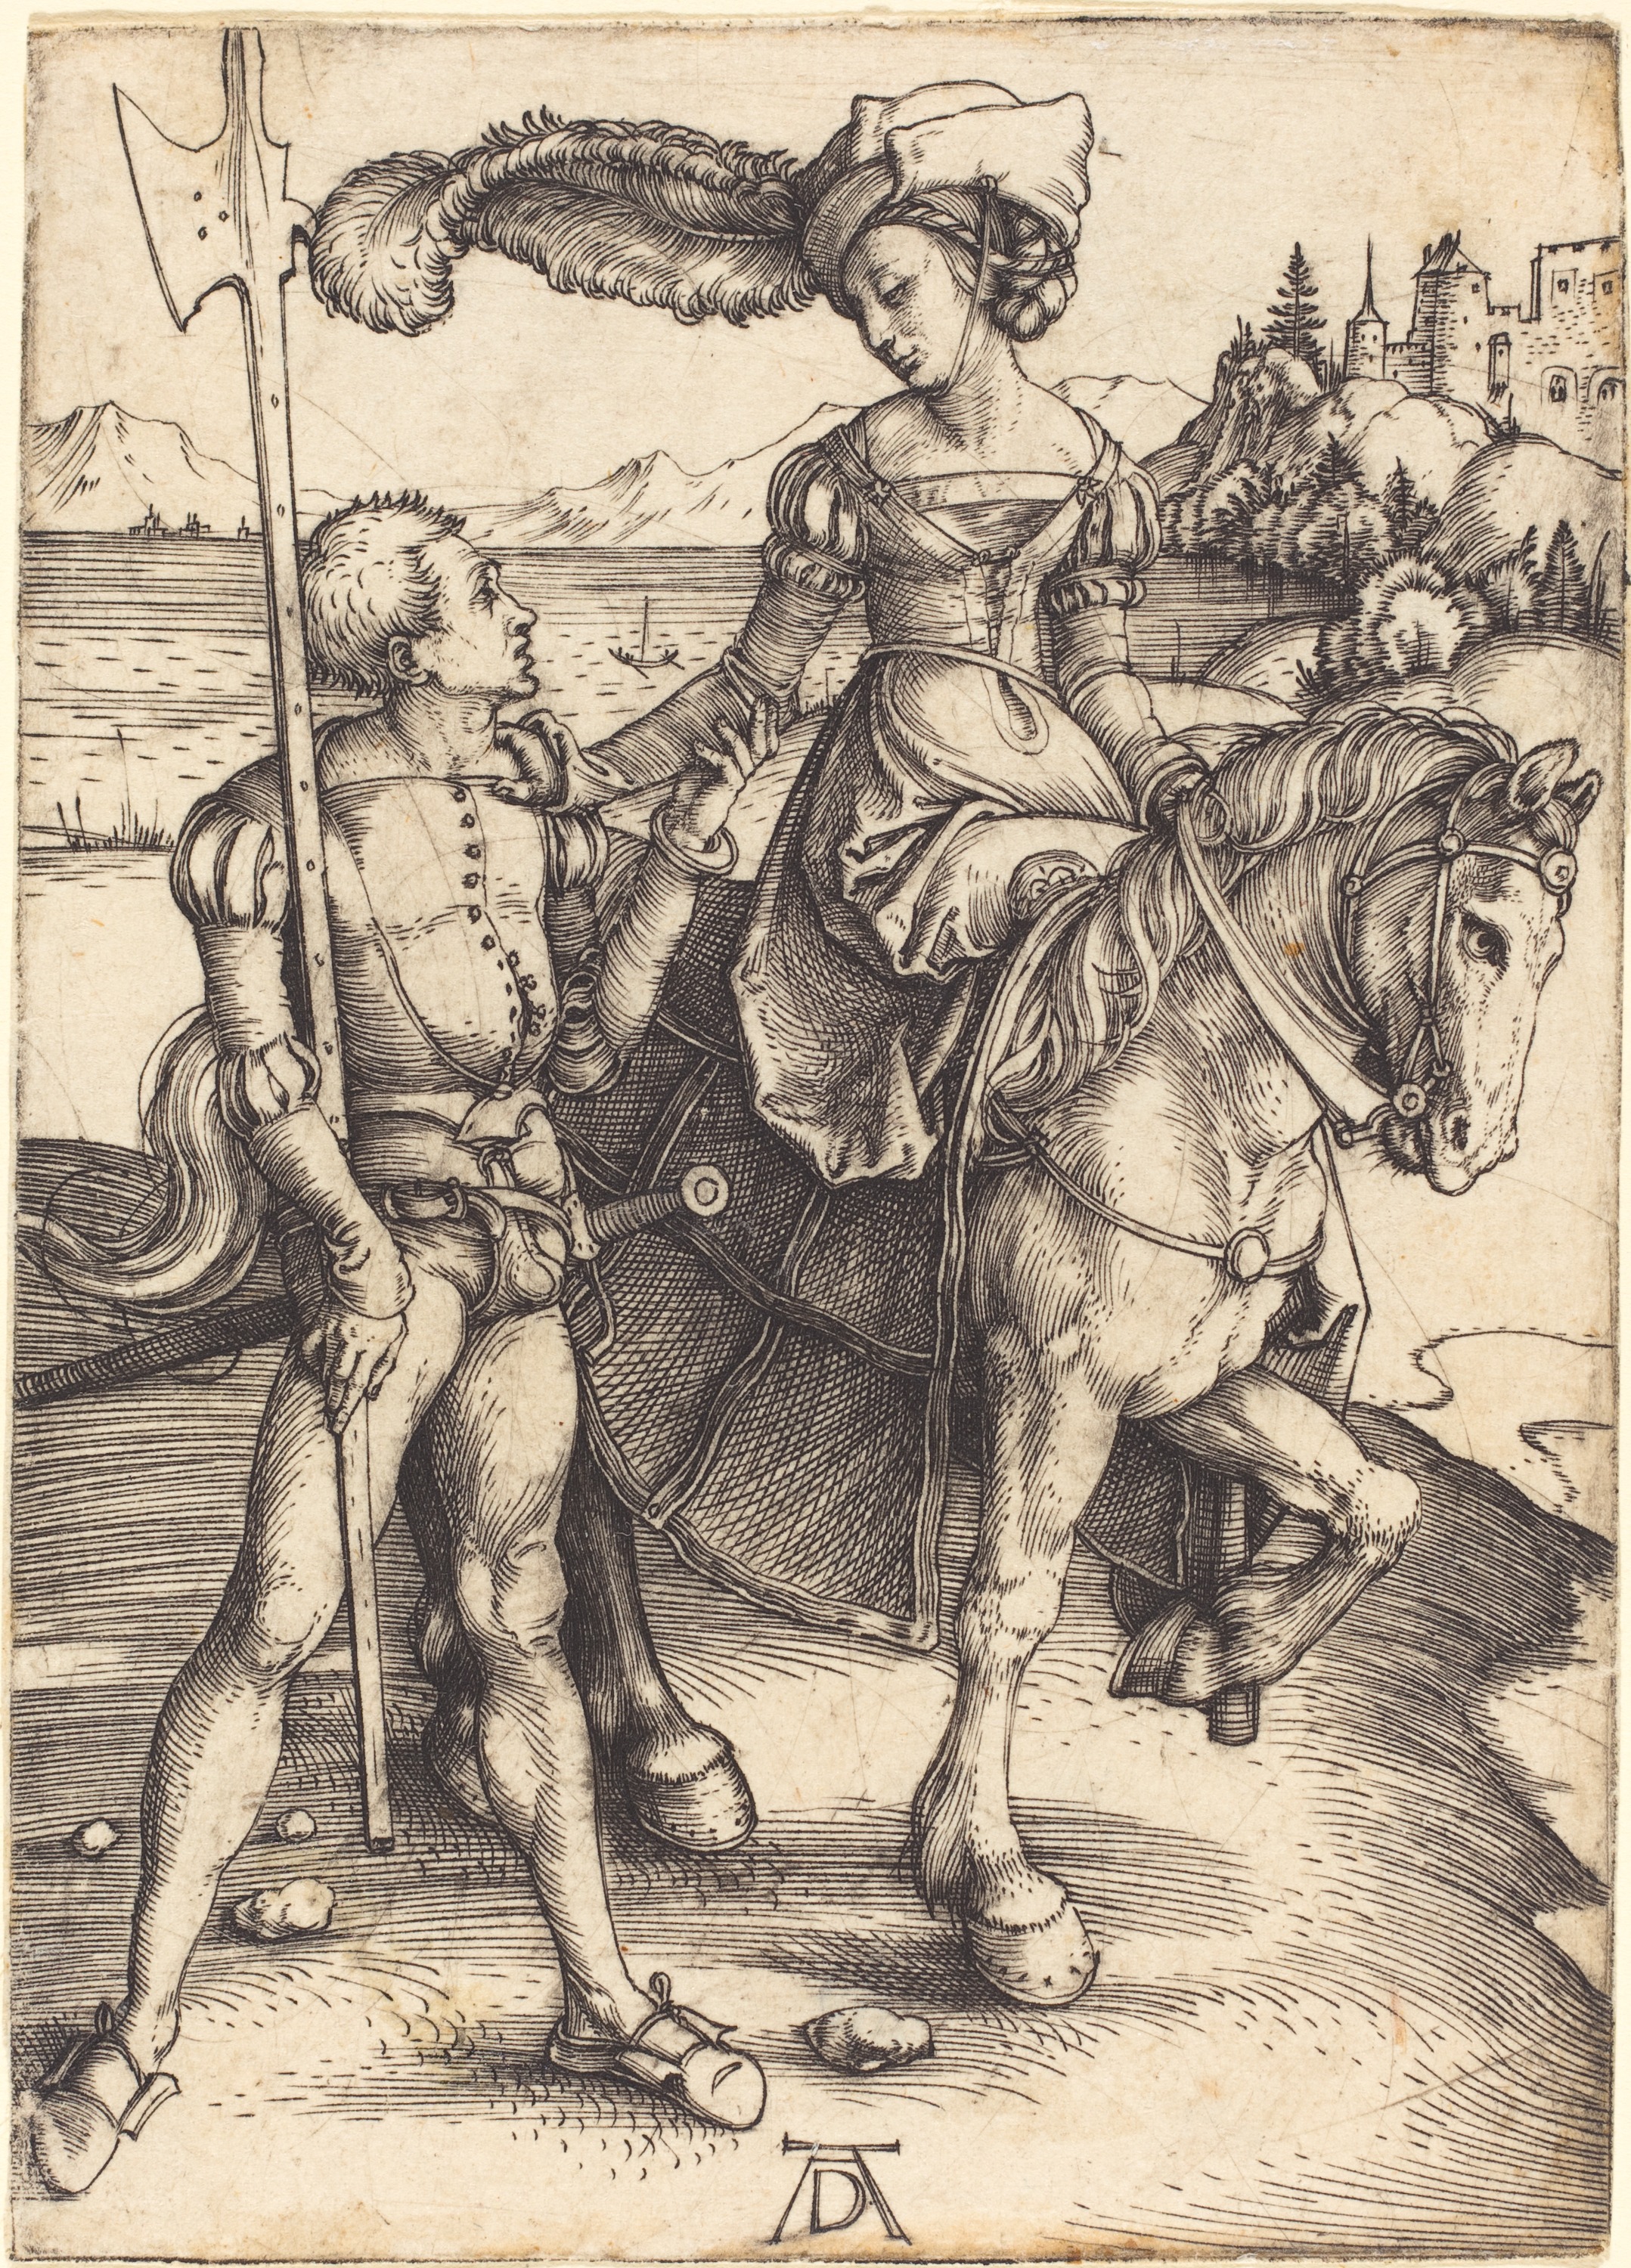 馬に乗る女性と傭兵 by Albrecht Dürer - 1497年頃 - 109×78mm 